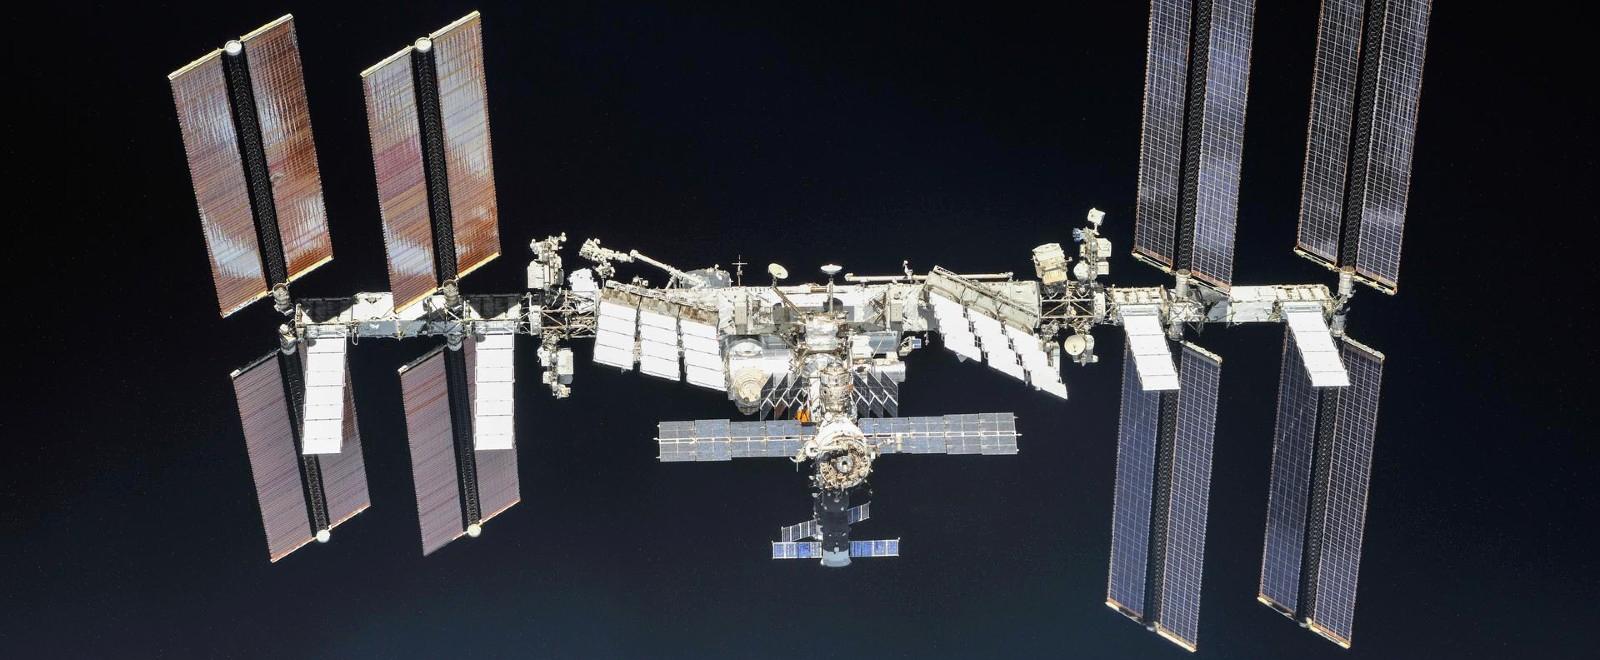 Universidad de Chile invita a sumarse a la nueva misión de llegar a la Estación Espacial Internacional